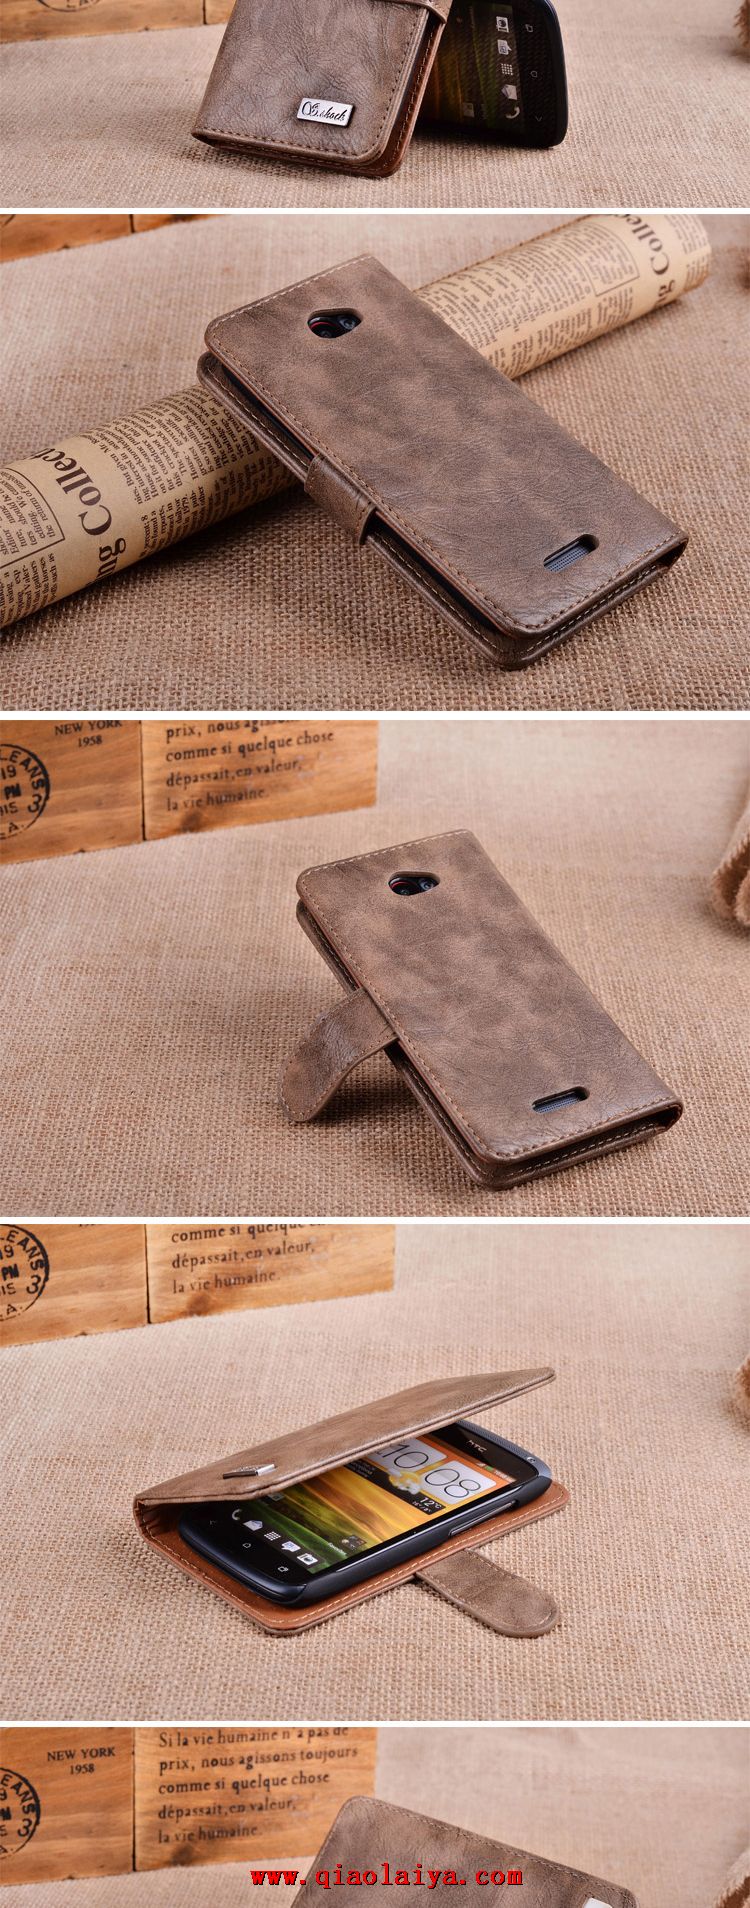 HTC One S téléphone portable en cuir des ensembles coque protectrice en cuir